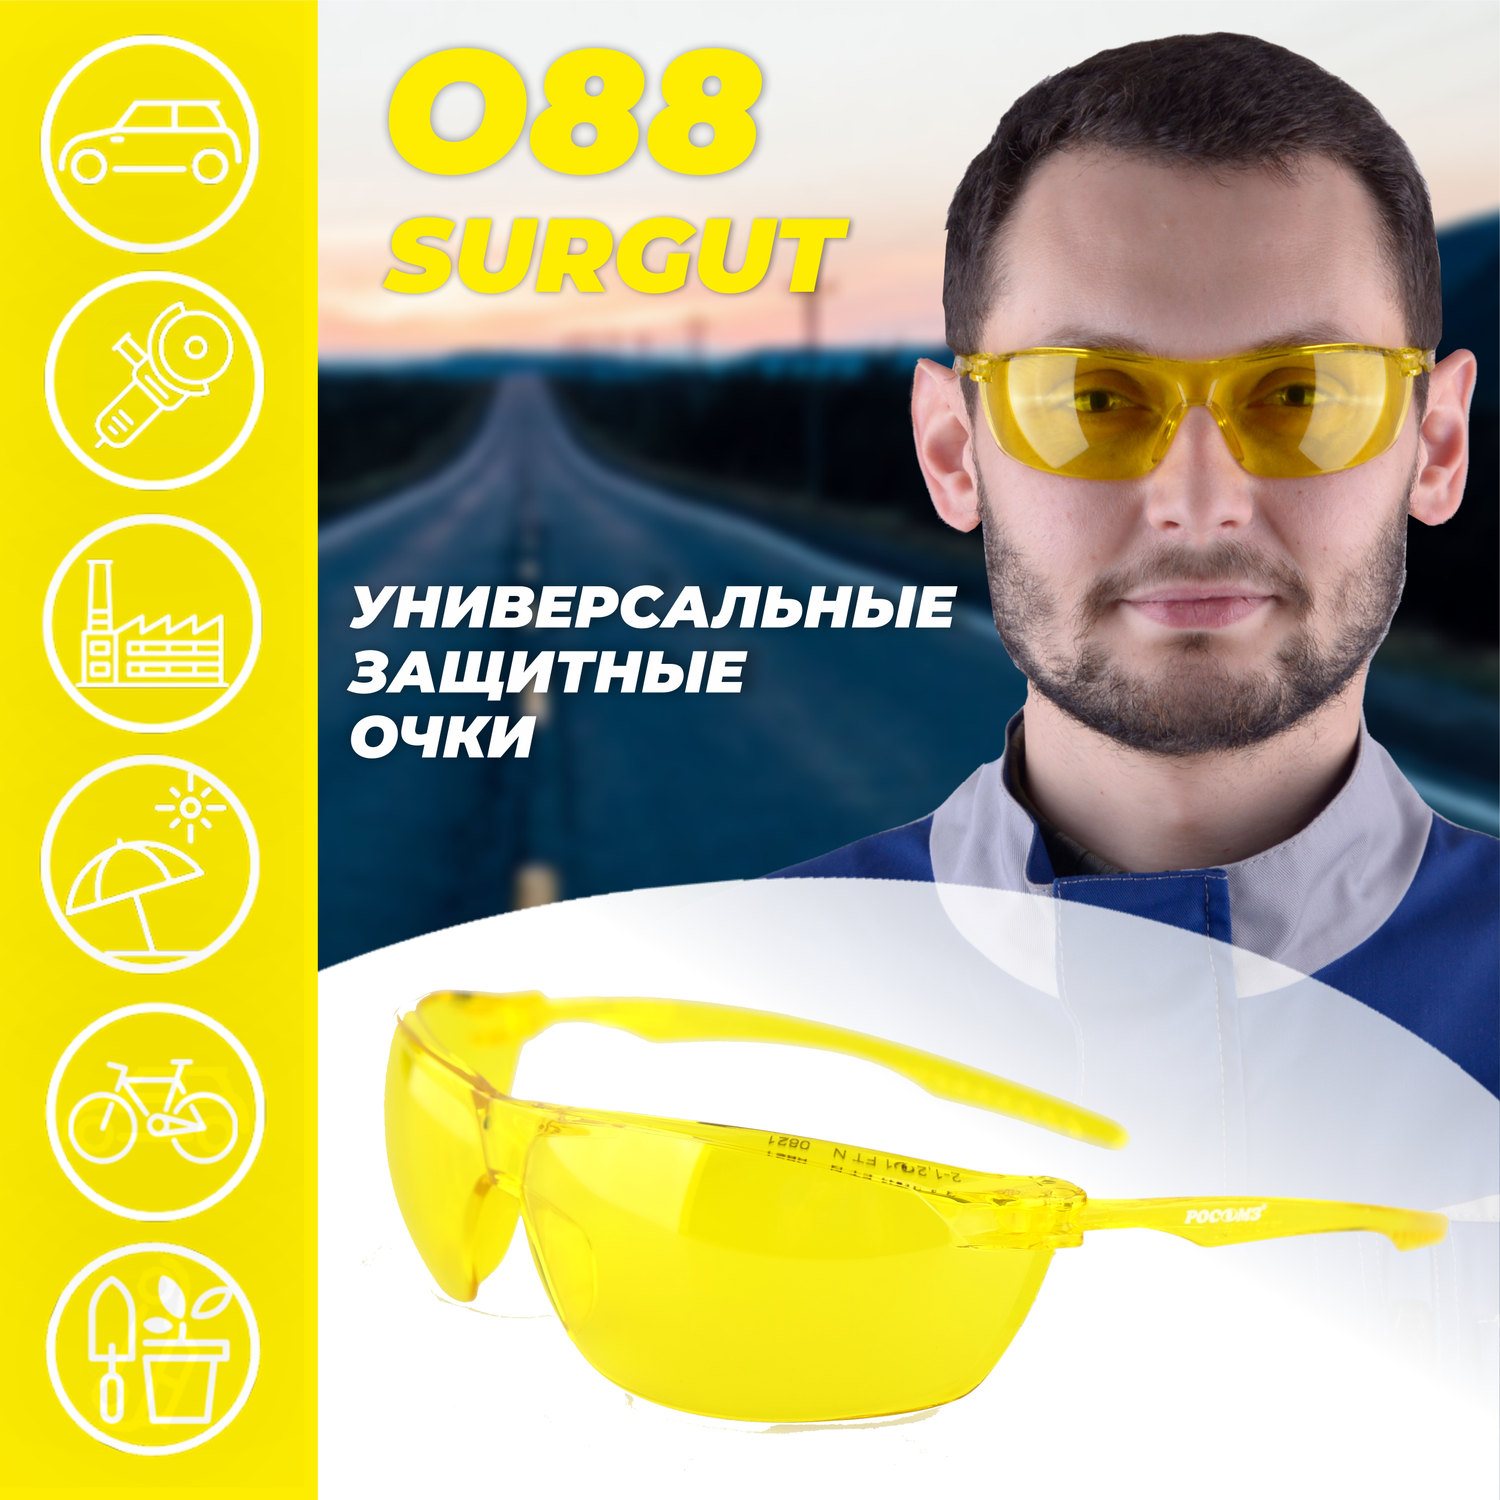 Очки защитные РОСОМЗ О88 SURGUT желтые - фото 2